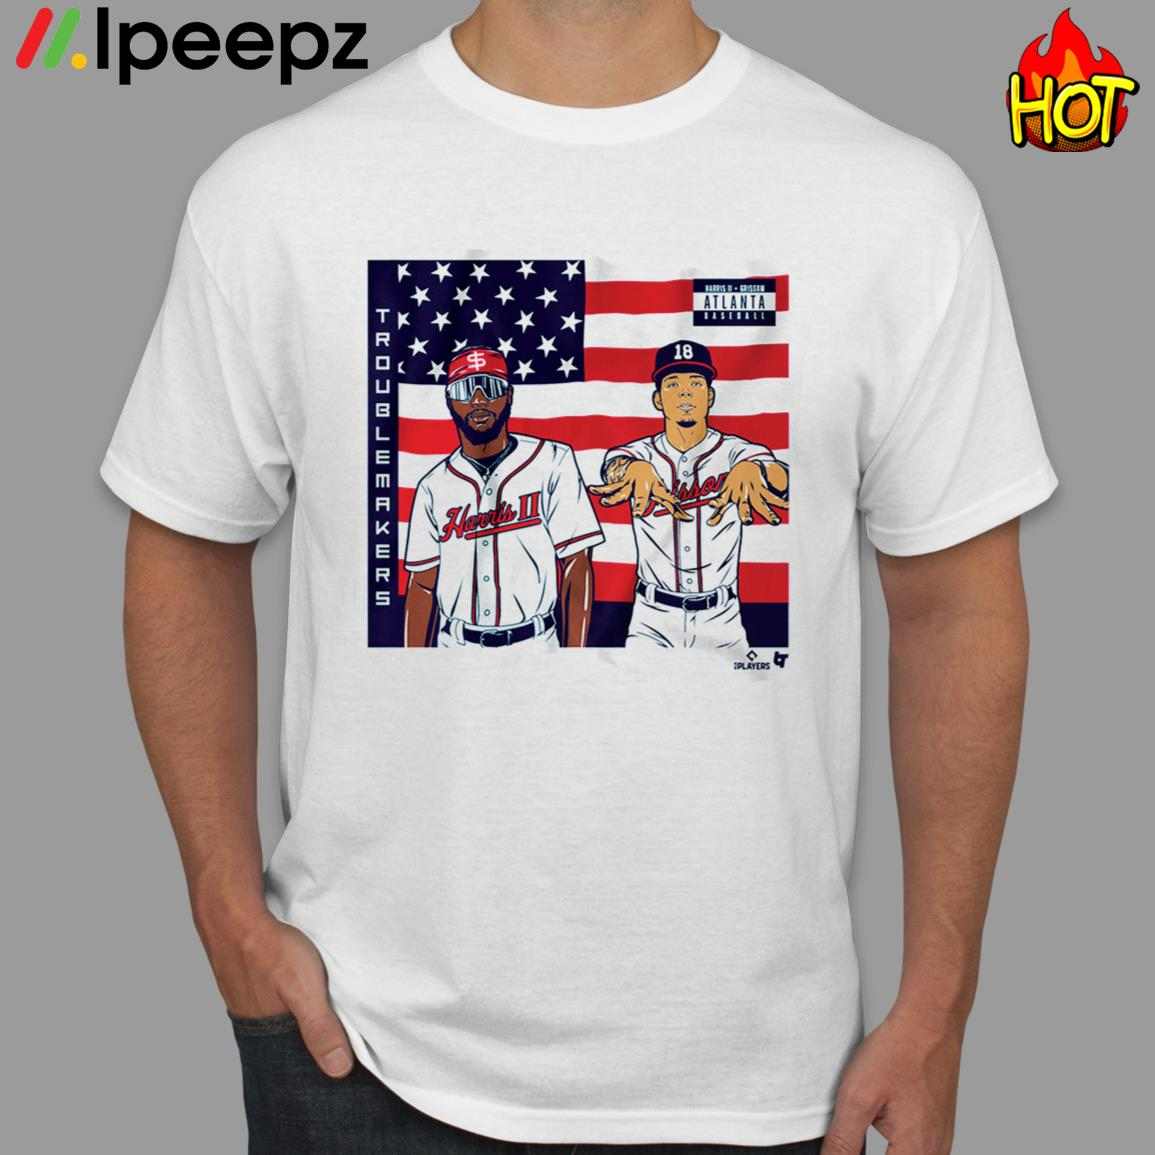 Boston Strong Shirt - Ipeepz